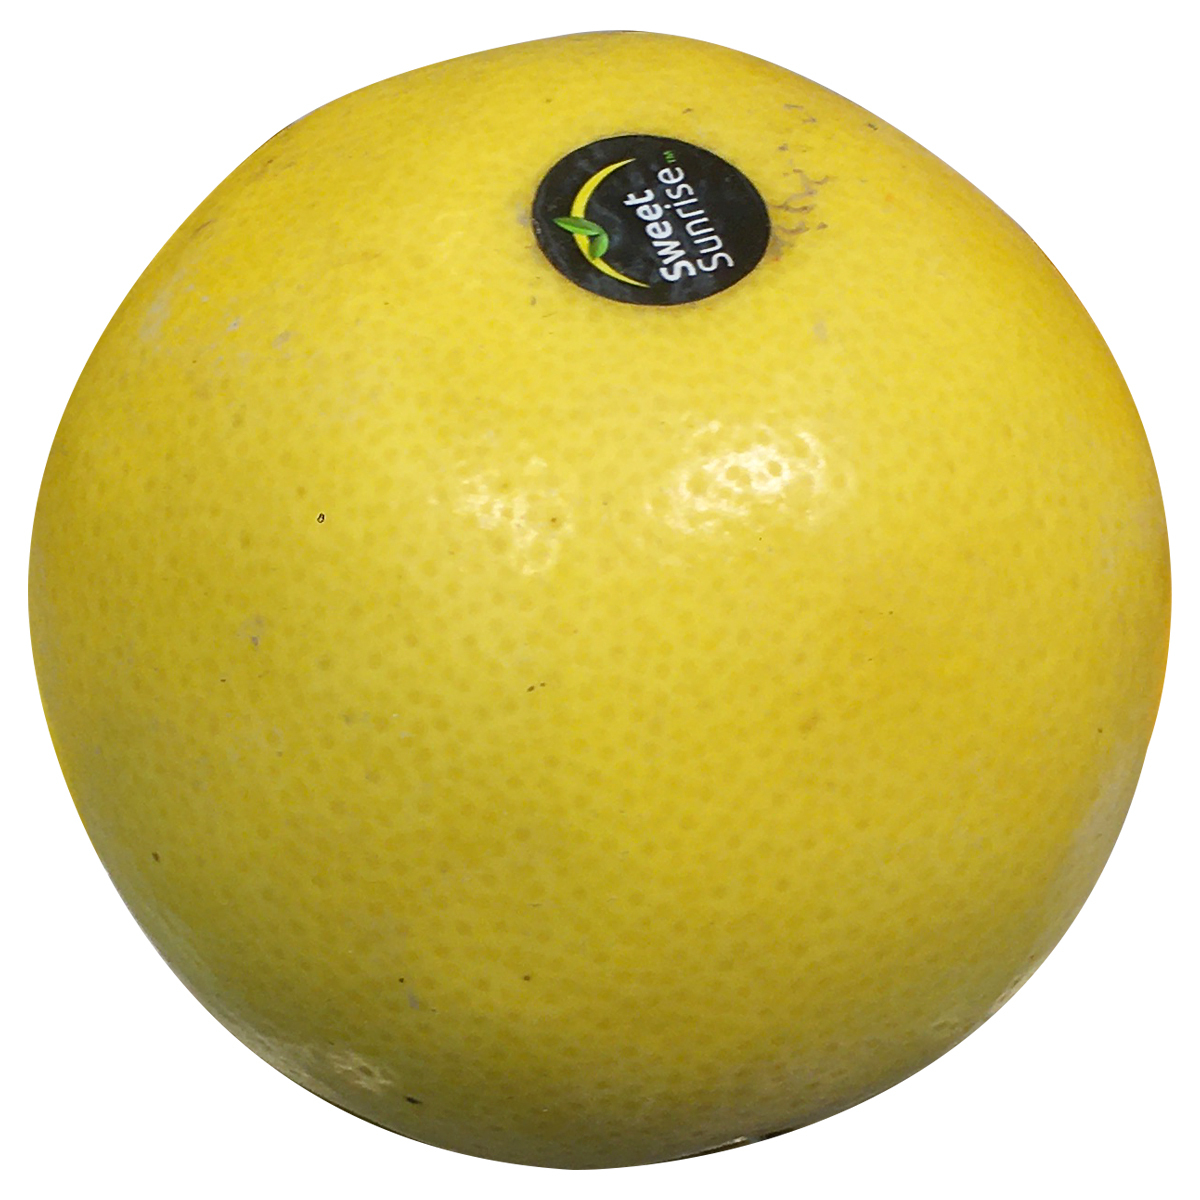 Jackson Fruit Imported 900 gm - 1 kg